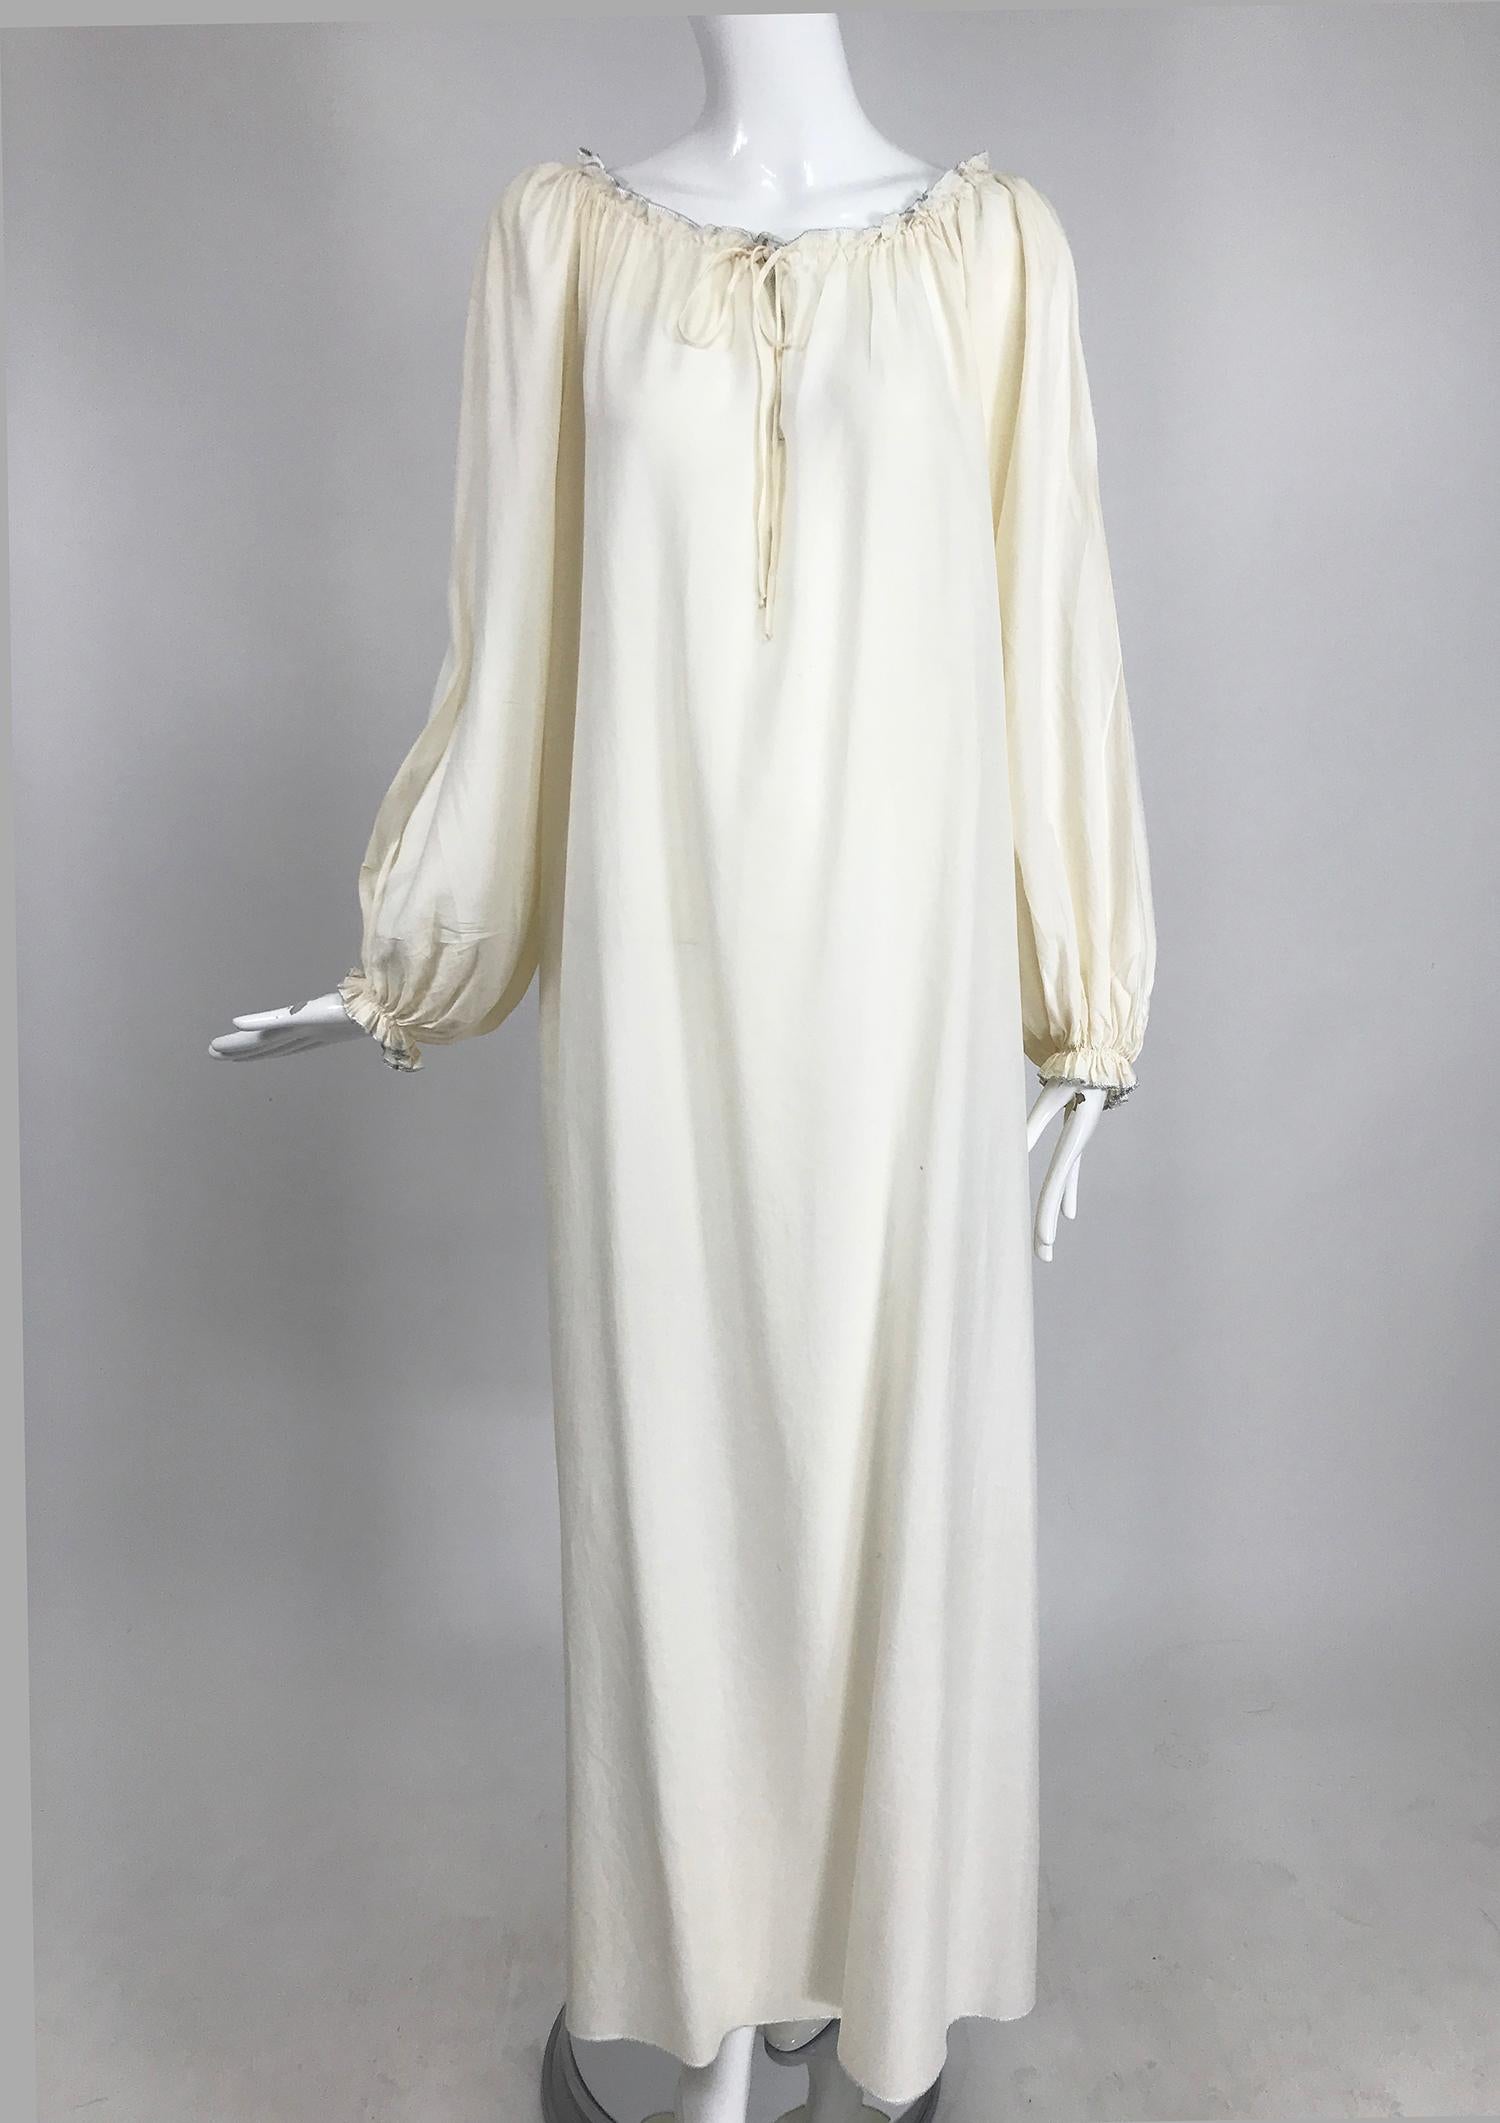 Vintage Fernando Sanchez cremefarbenes Maxikleid aus Seide im Bohemian-Stil aus den 1970er Jahren. Schönes Kleid, der Stoff ist durchscheinend, toll mit einem Gürtel getragen (Gürtel auf dem Foto, nicht enthalten). Das Kleid zum Überziehen hat eine